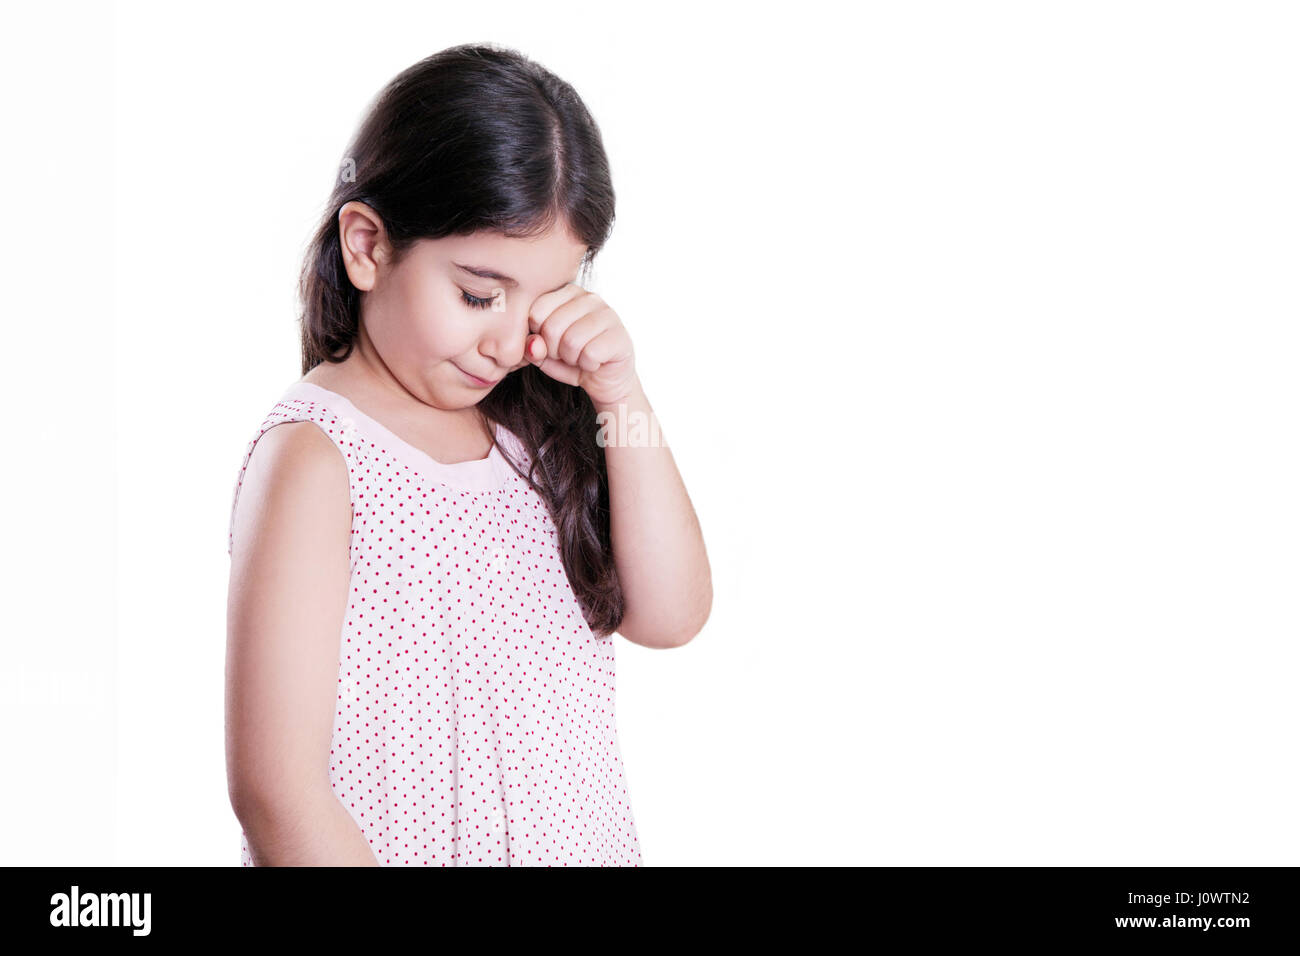 Traurig weinende unglücklich kleine schöne Mädchen mit dunklen Haaren und Augen. Studioaufnahme, isoliert auf weißem Hintergrund. Stockfoto